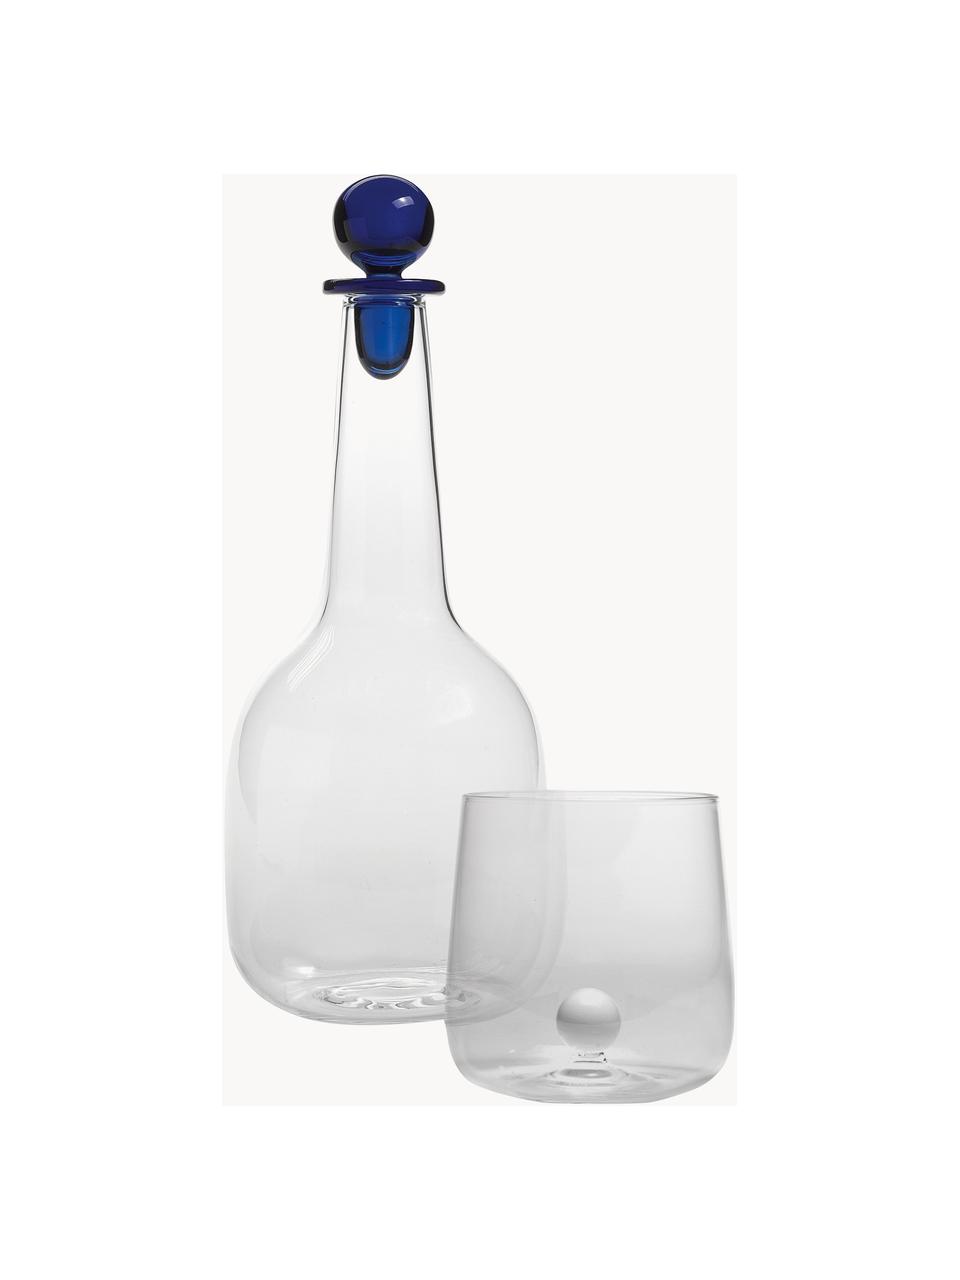 Ručně vyrobené sklenice Bilia, 6 ks, Borosilikátové sklo, Transparentní, bílá, Ø 9 cm, V 9 cm, 440 ml